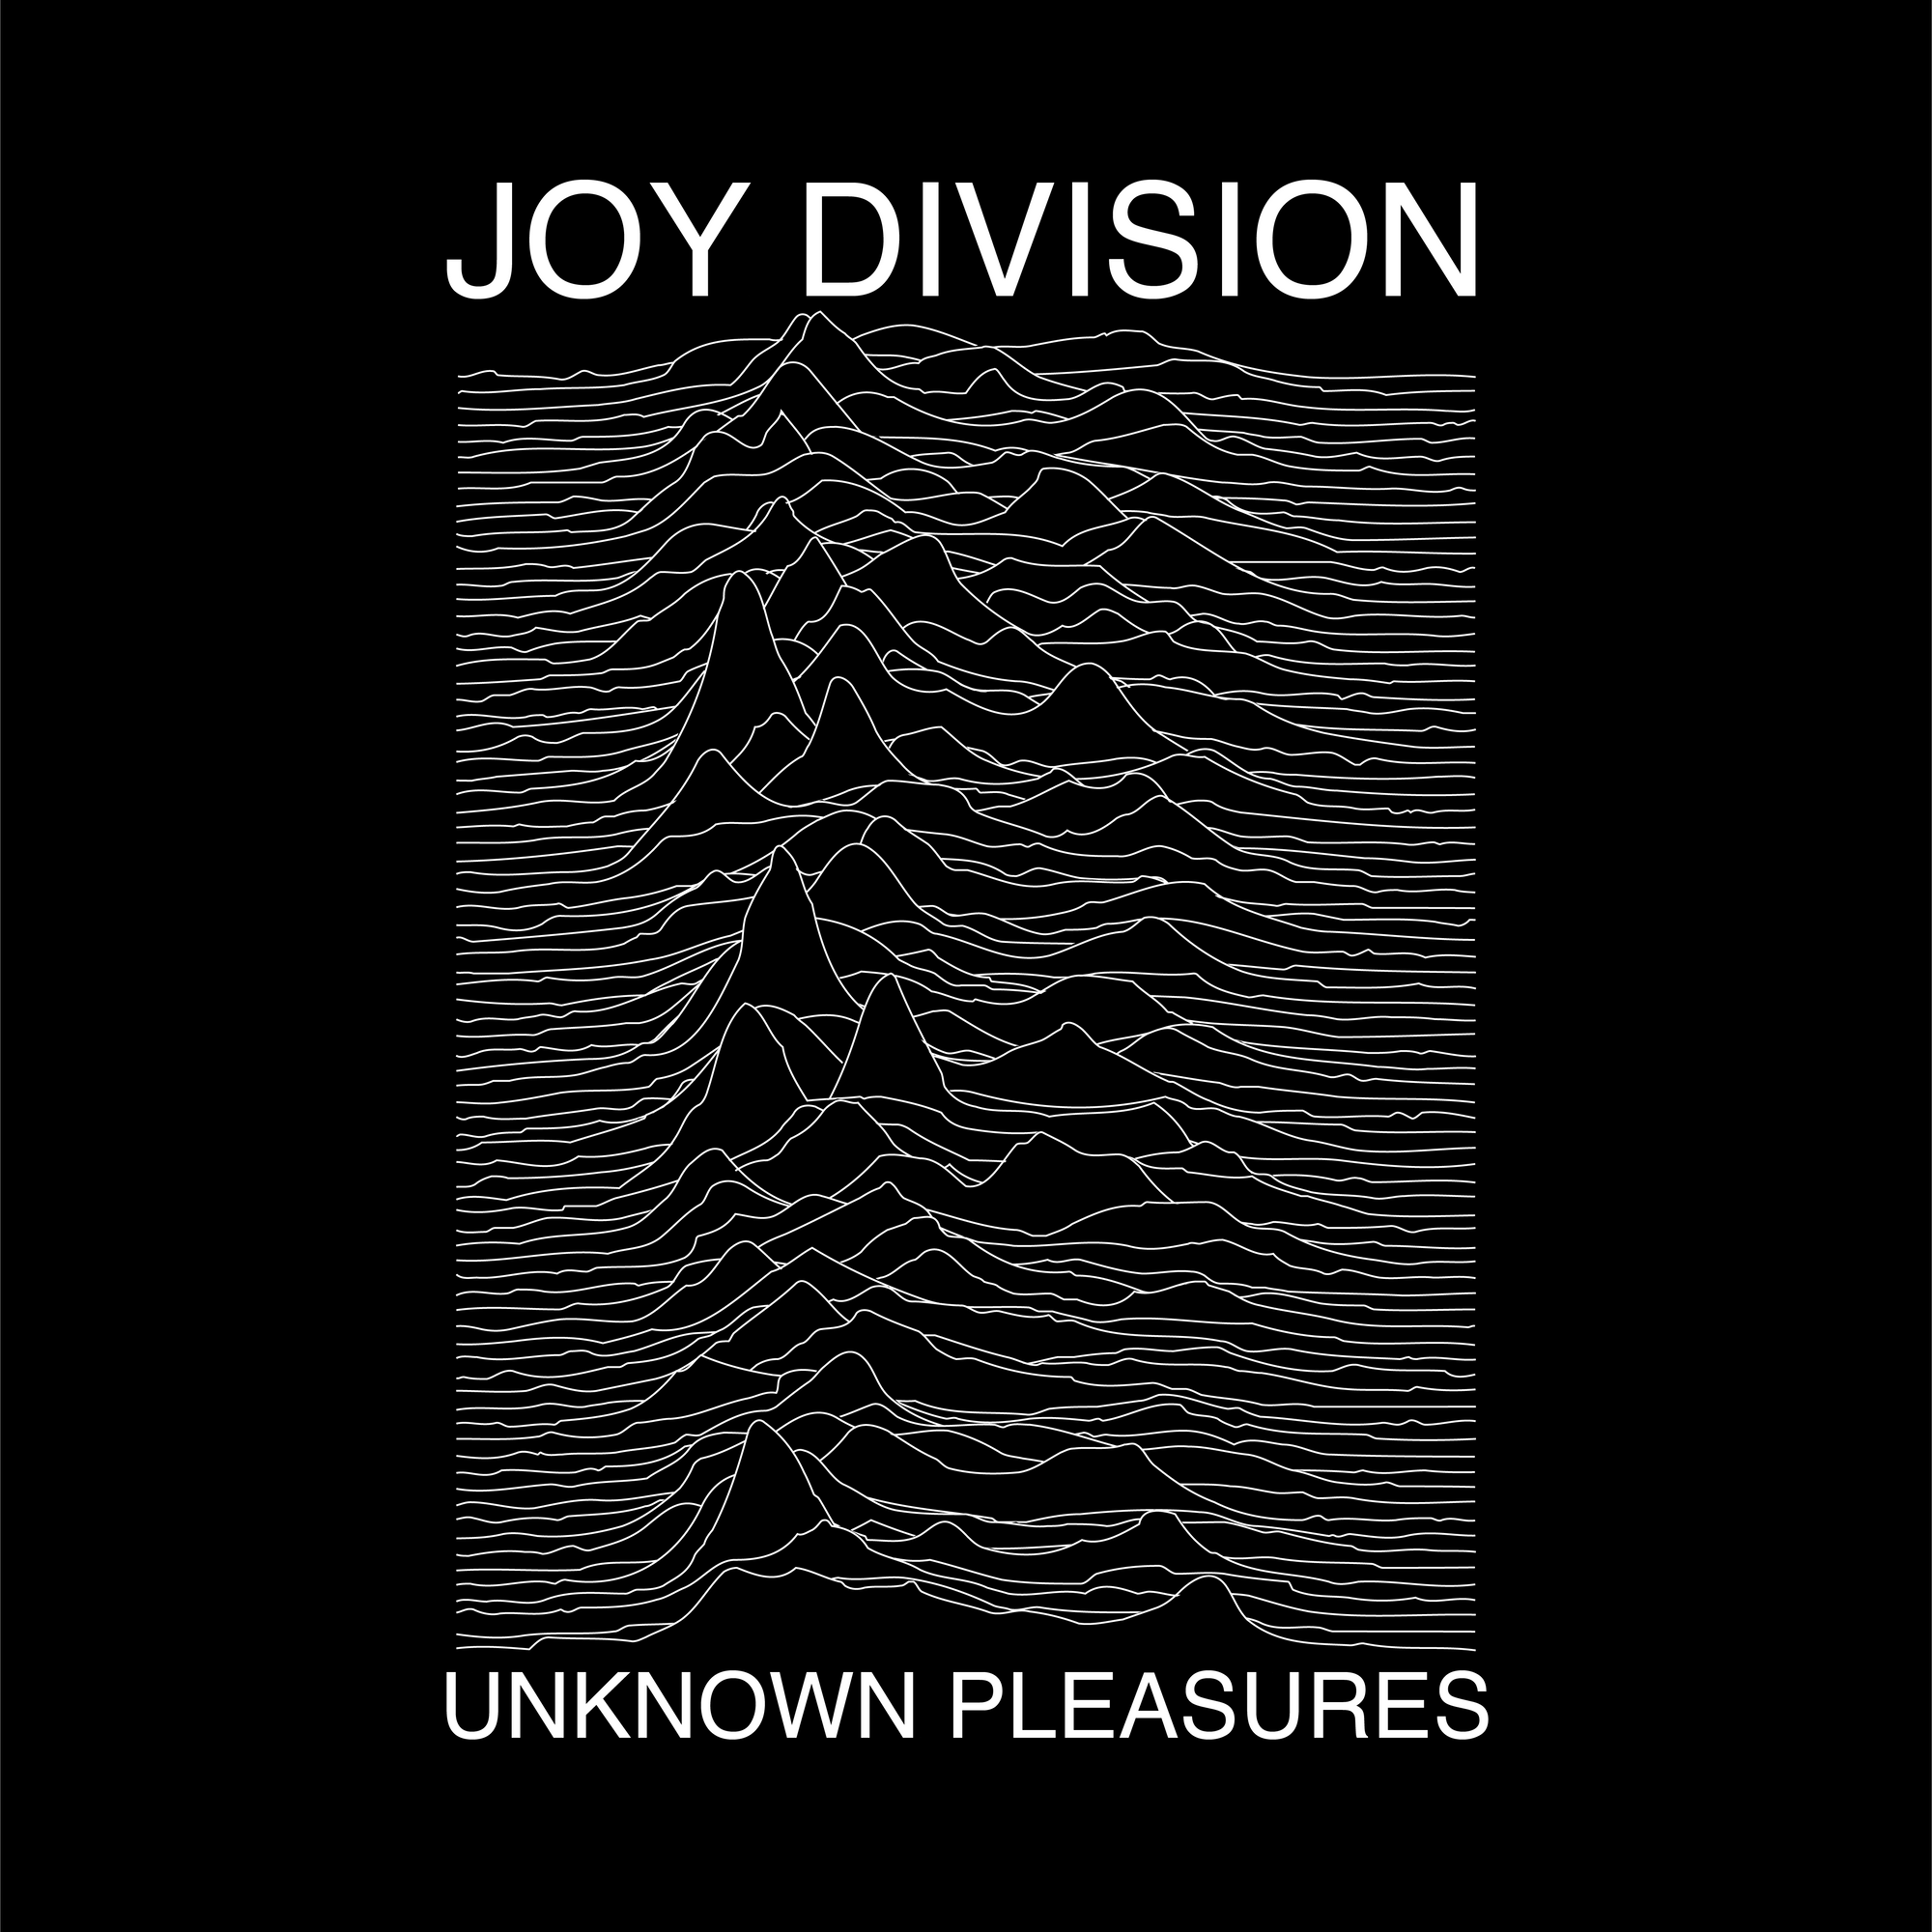 Reproducing Joy Division's "Unknown Pleasures" Album Cover in Adobe Illustrator